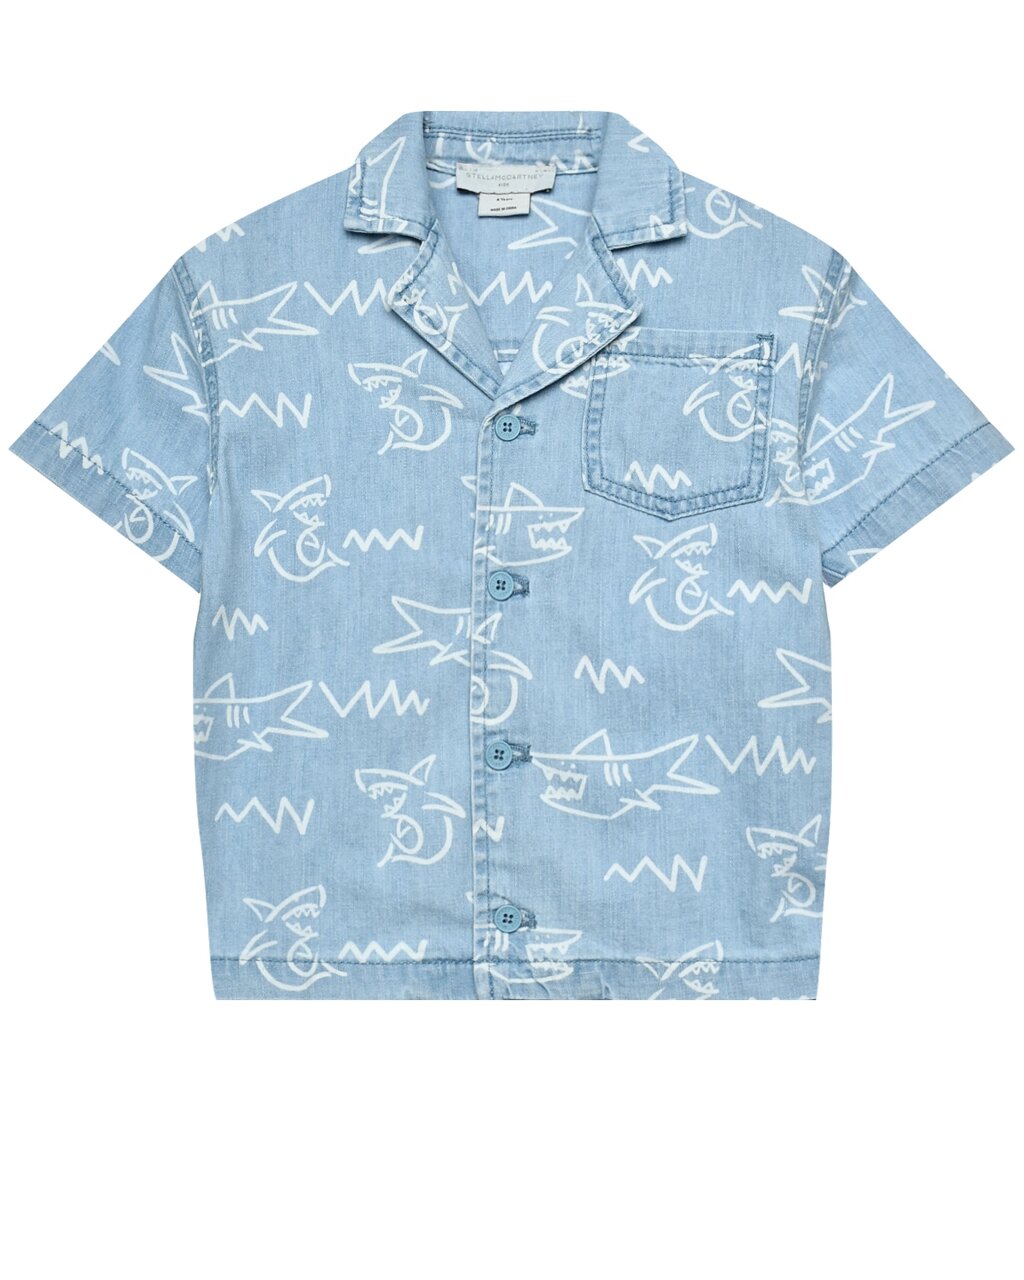 Джинсовая рубашка с принтом акулы Stella McCartney от компании Admi - фото 1